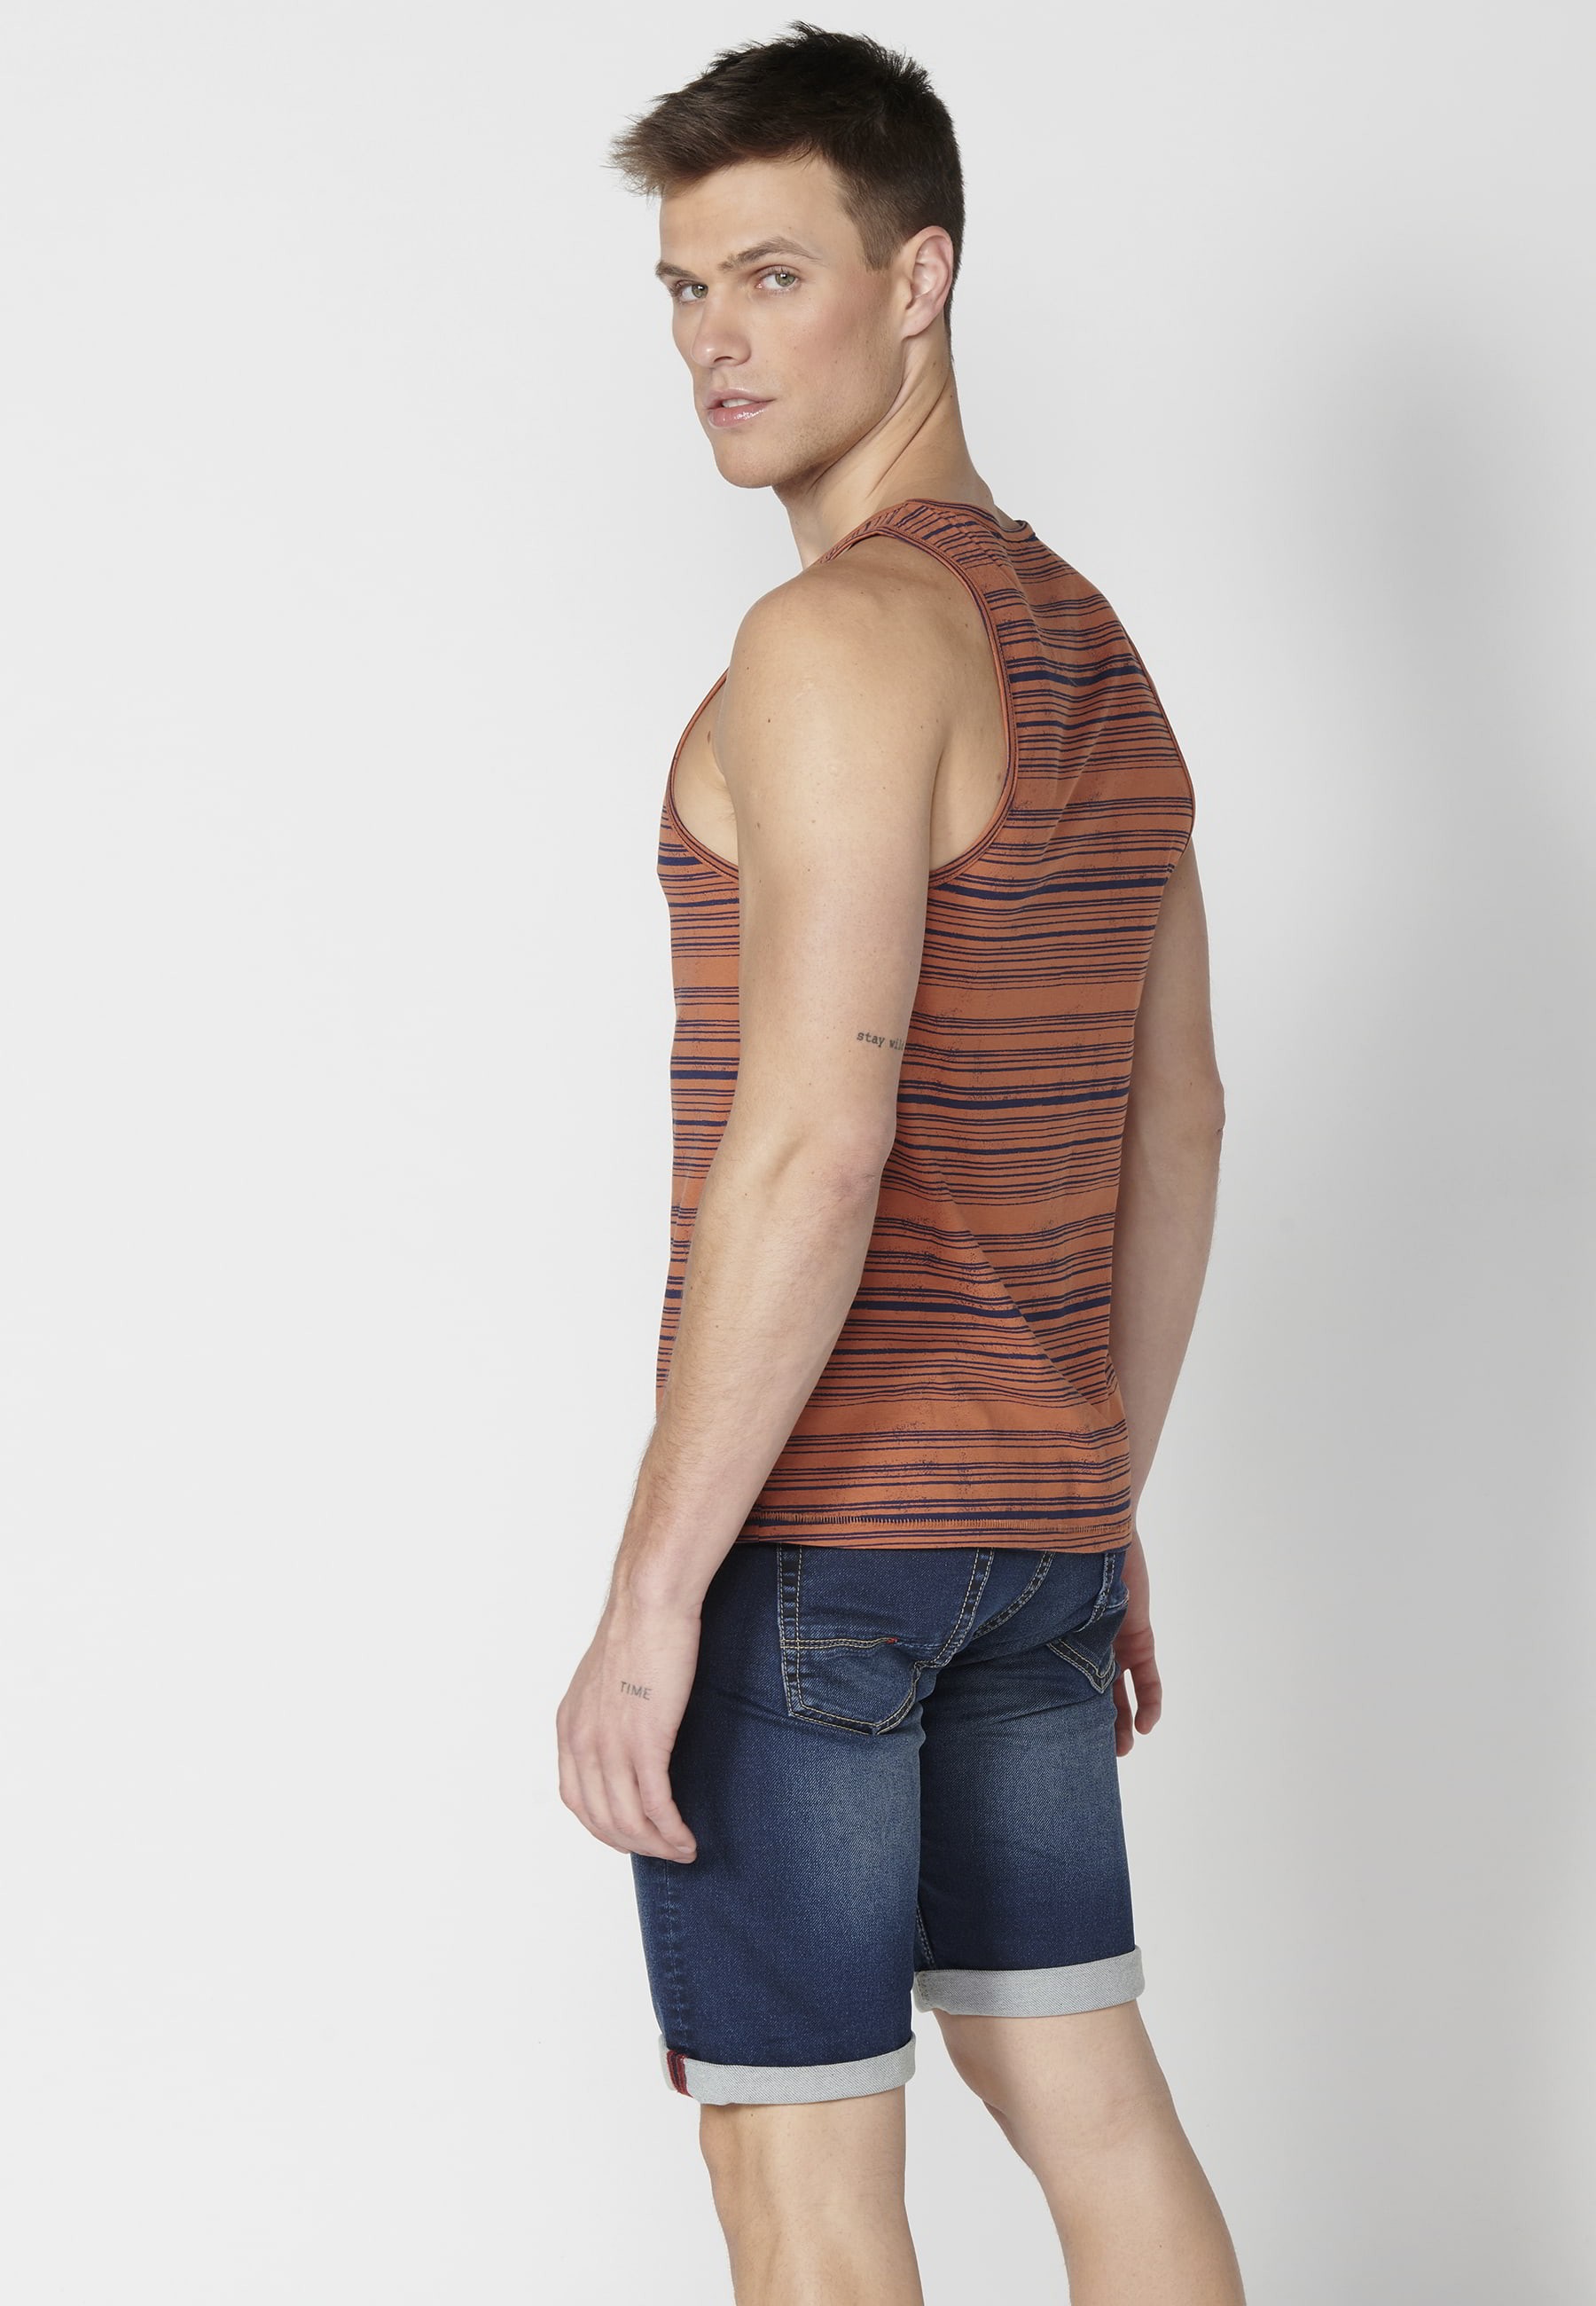 Camiseta sin mangas de algodón estampado a rayas color teja para Hombre